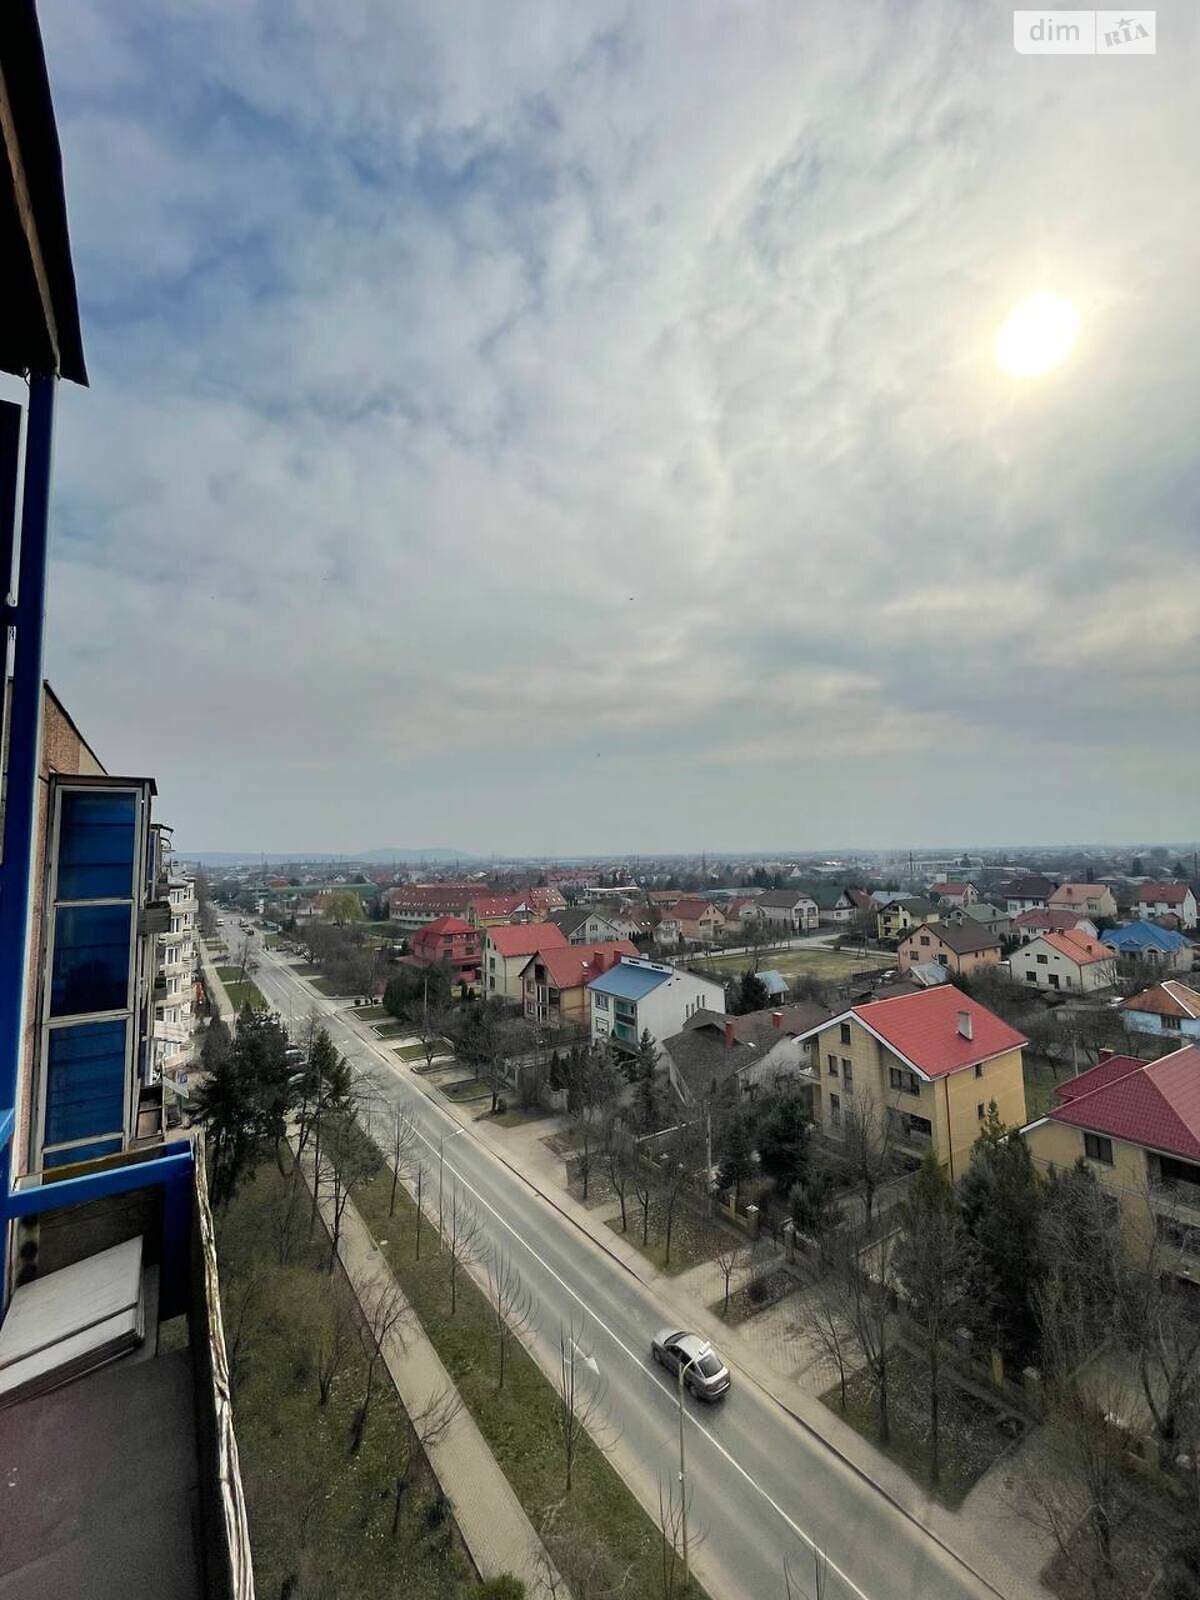 Продажа двухкомнатной квартиры в Ужгороде, на ул. Игоря Сикорского, район Пьяный базар фото 1